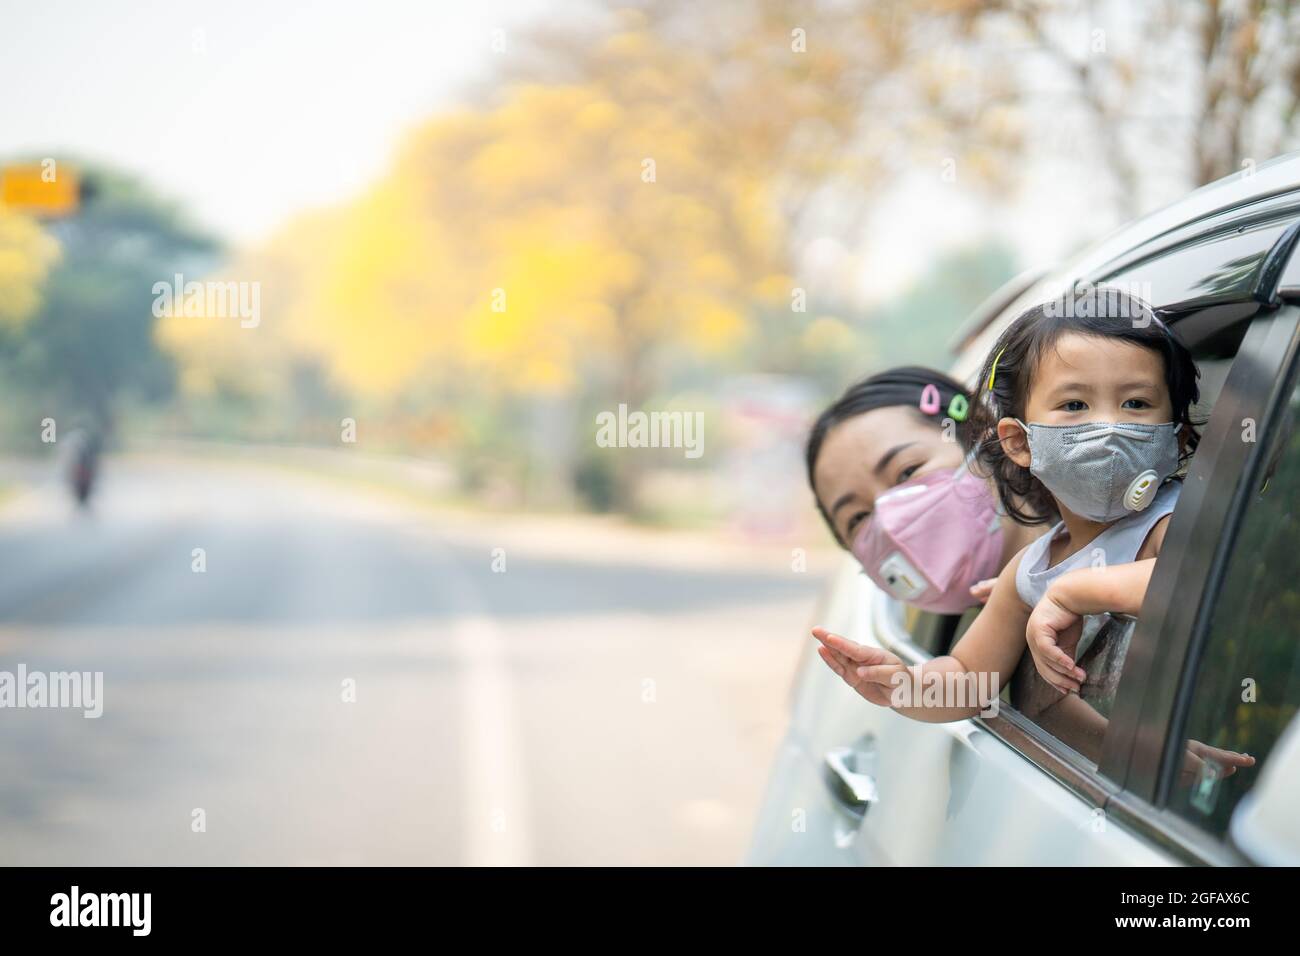 Mutter und Tochter haben Spaß beim Reiten auf der Rückseite eines Autos, während sie eine Schutzmaske tragen Stockfoto